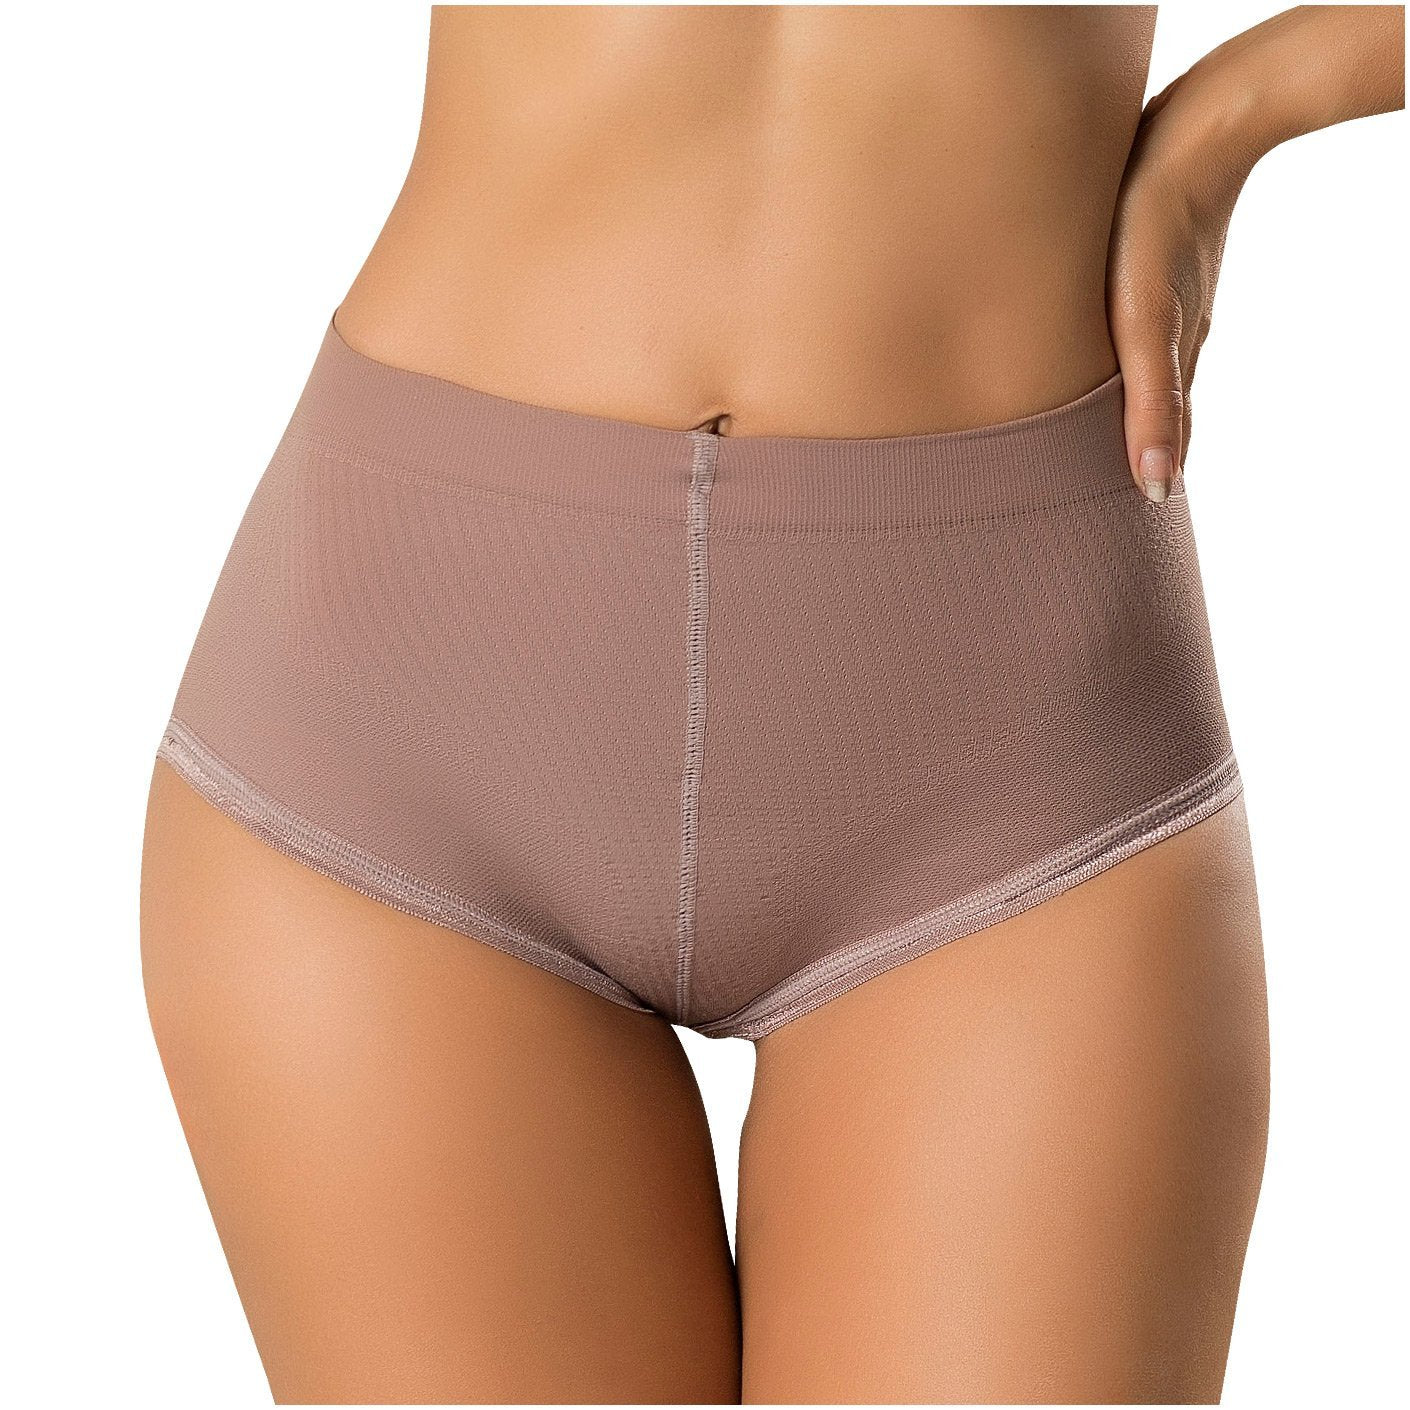 LATY ROSE 21896 High Waist Butt Lifting Panties - New England Supplier